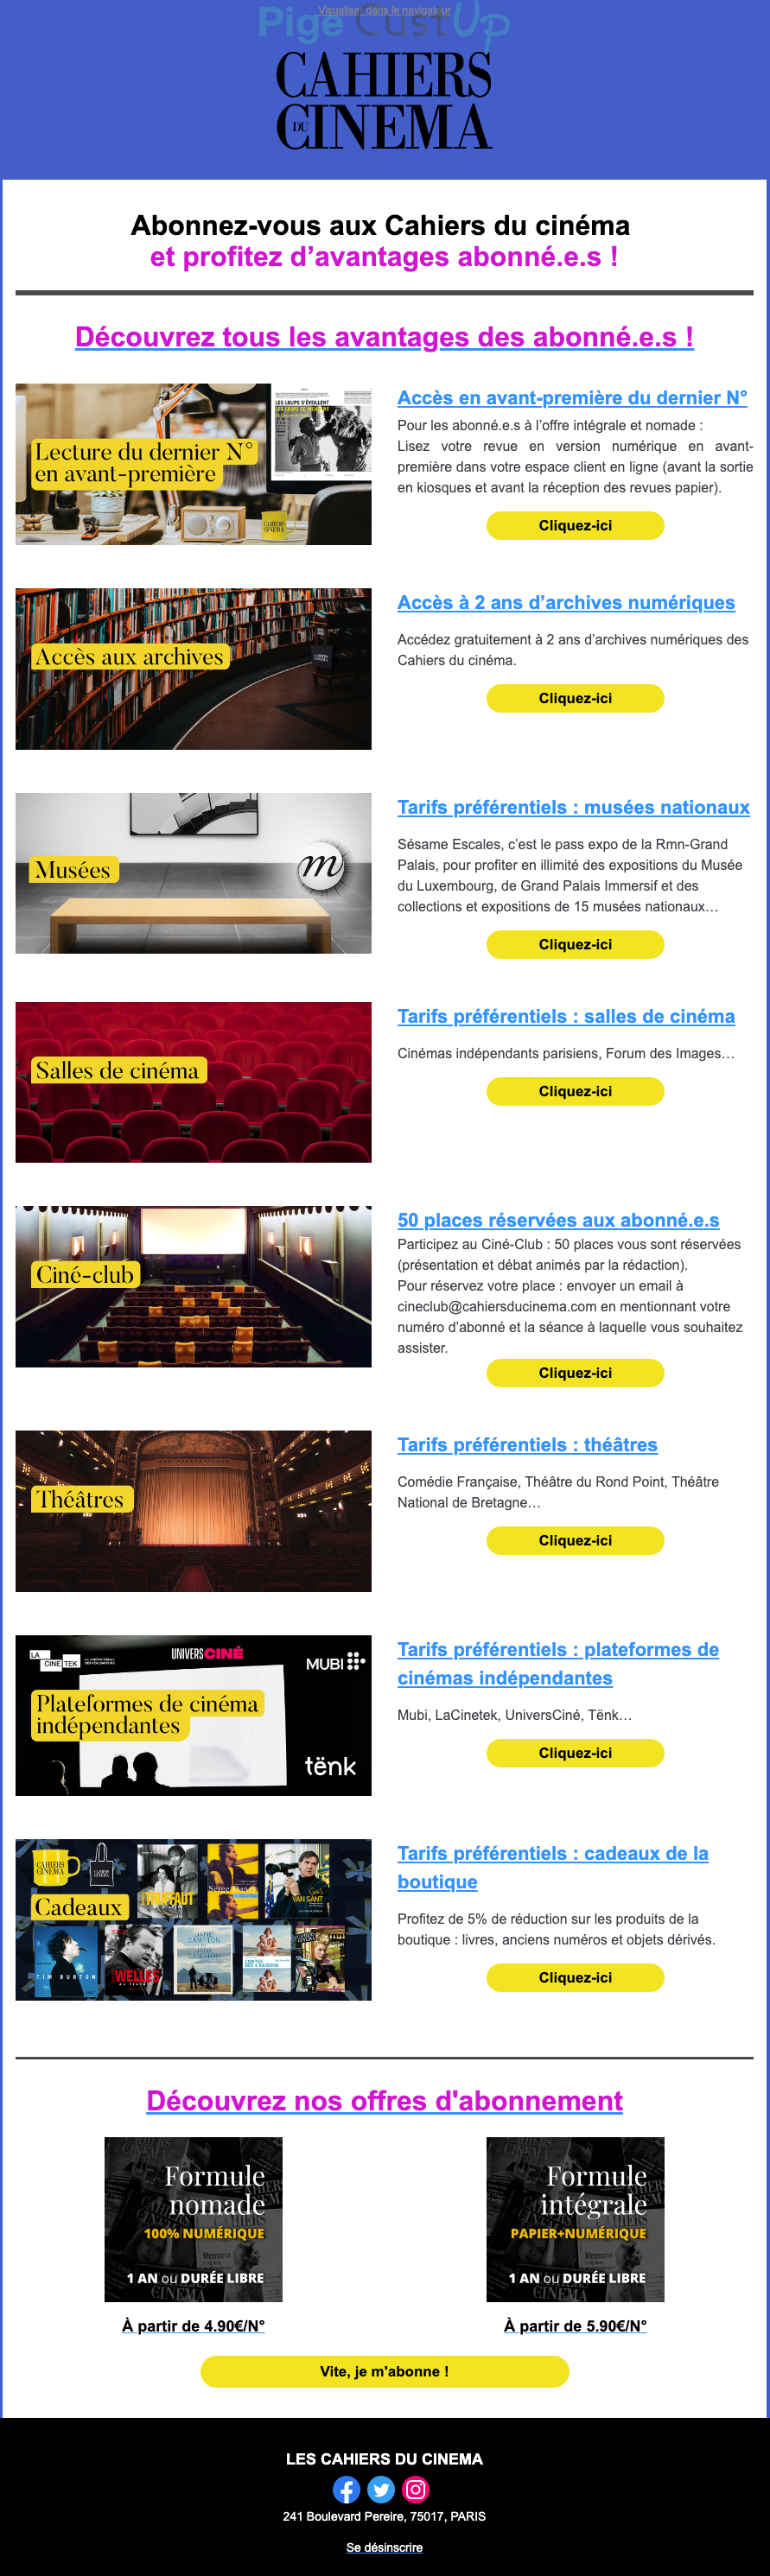 Exemple de Type de media  e-mailing - Cahiers du Cinéma - Marketing Acquisition - Acquisition abonnements - Marketing fidélisation - Animation / Vie du Programme de Fidélité